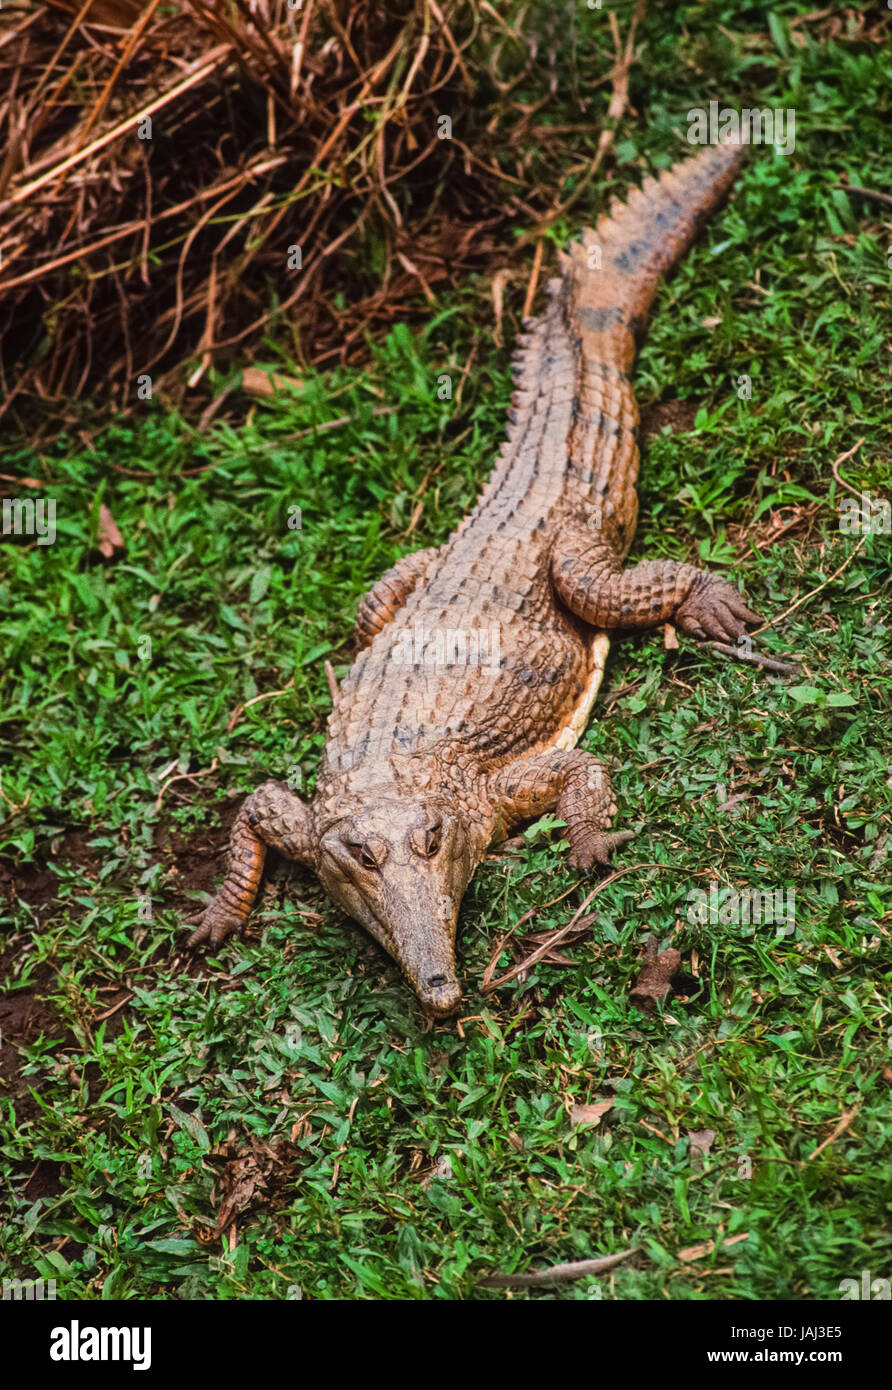 Australian coccodrillo di acqua dolce o Johnstone's Crocodile,(Crocodylus johnstoni), poggia nei pressi di un laghetto di acqua dolce creek, Queensland, Australia Foto Stock